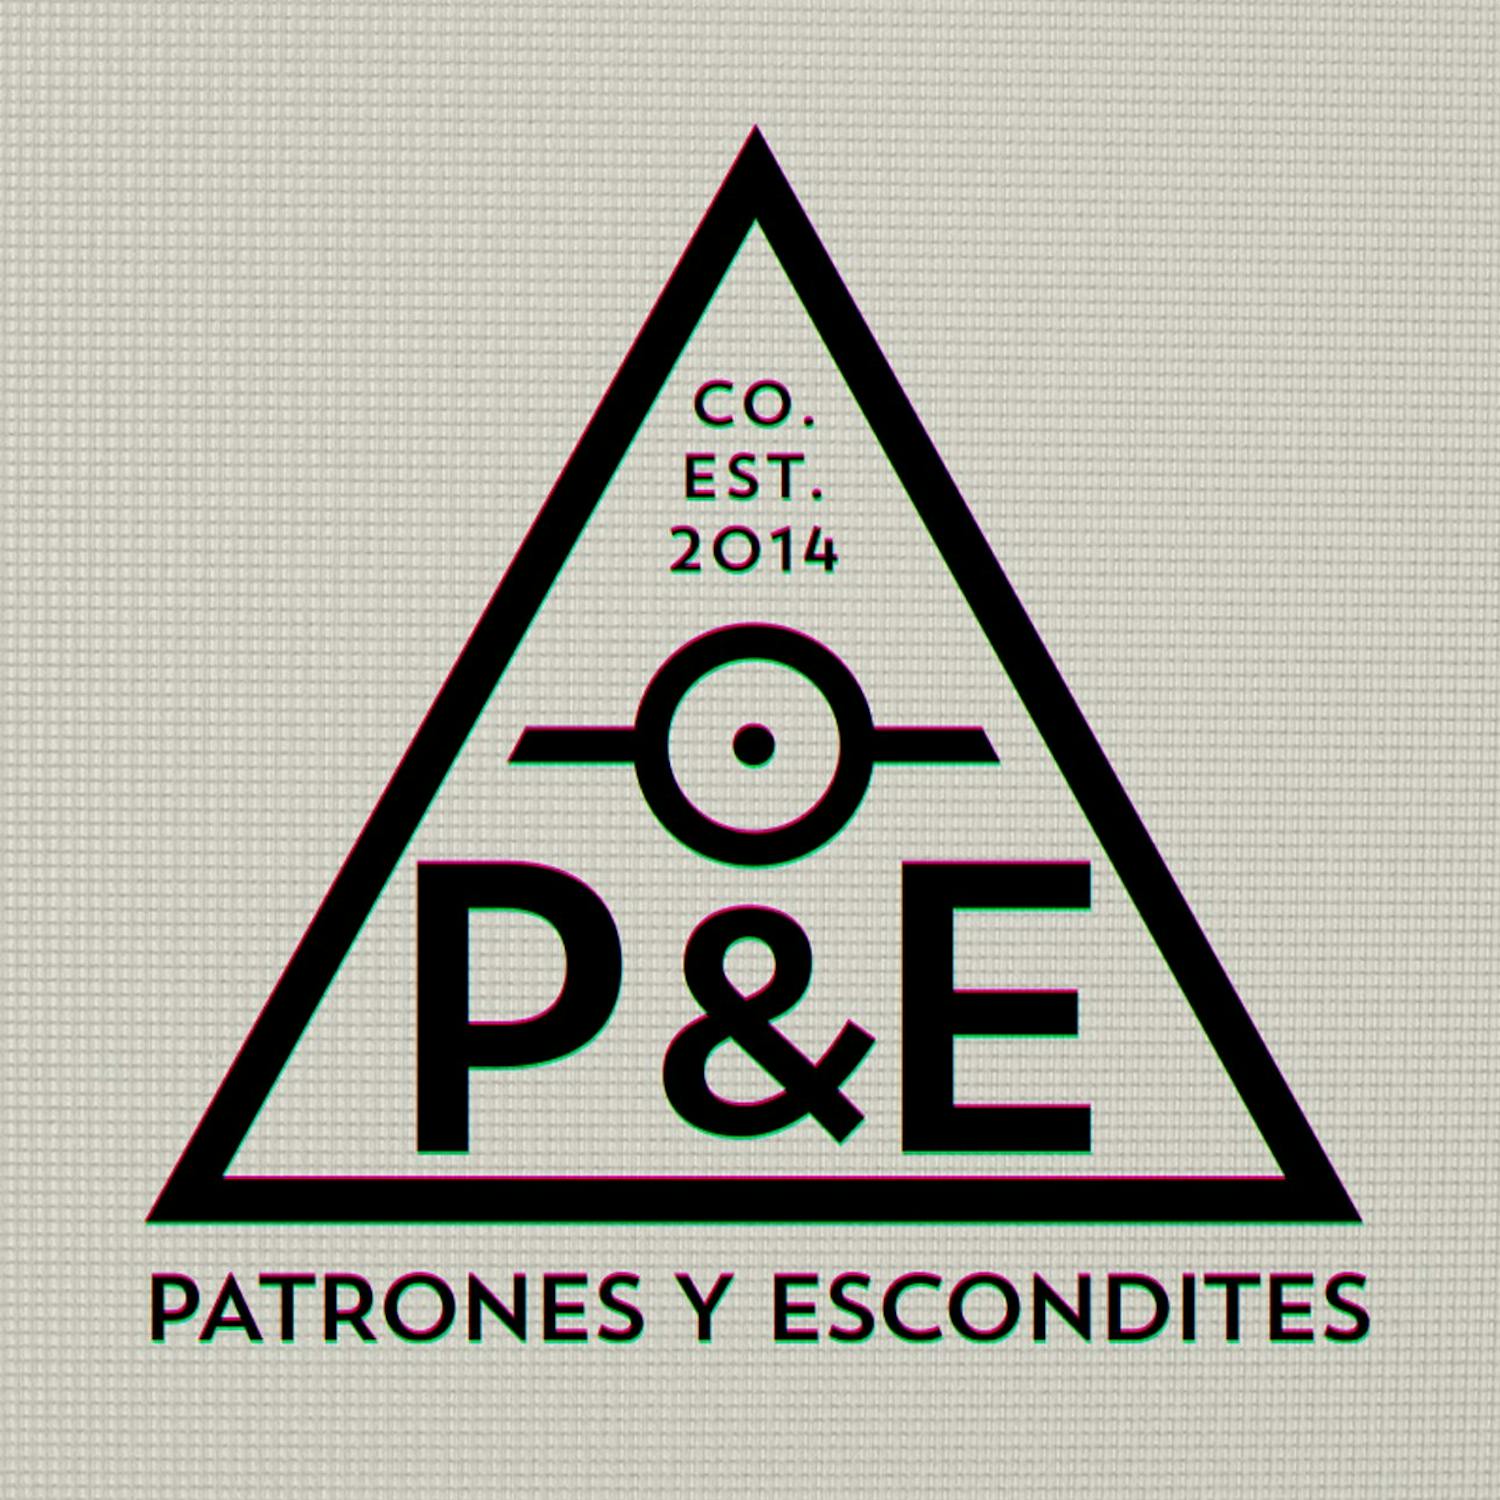 PATRONES Y ESCONDITES S.L.